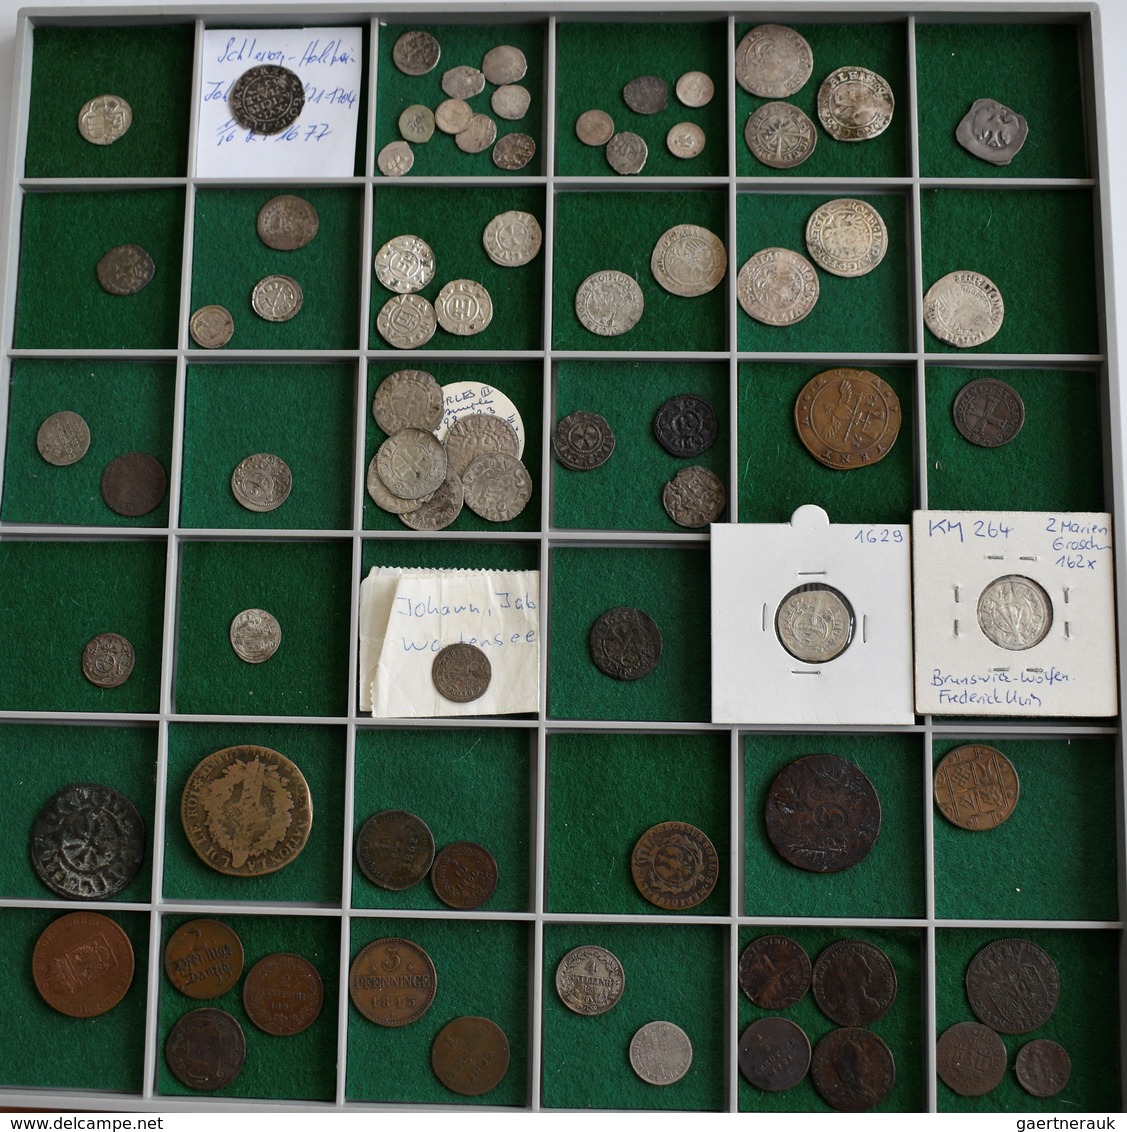 Europa: Konvolut Von Ca. 210 Silber- Und Bronzemünzen Diverser Europäischer Staaten, Beginnend Ab De - Altri – Europa